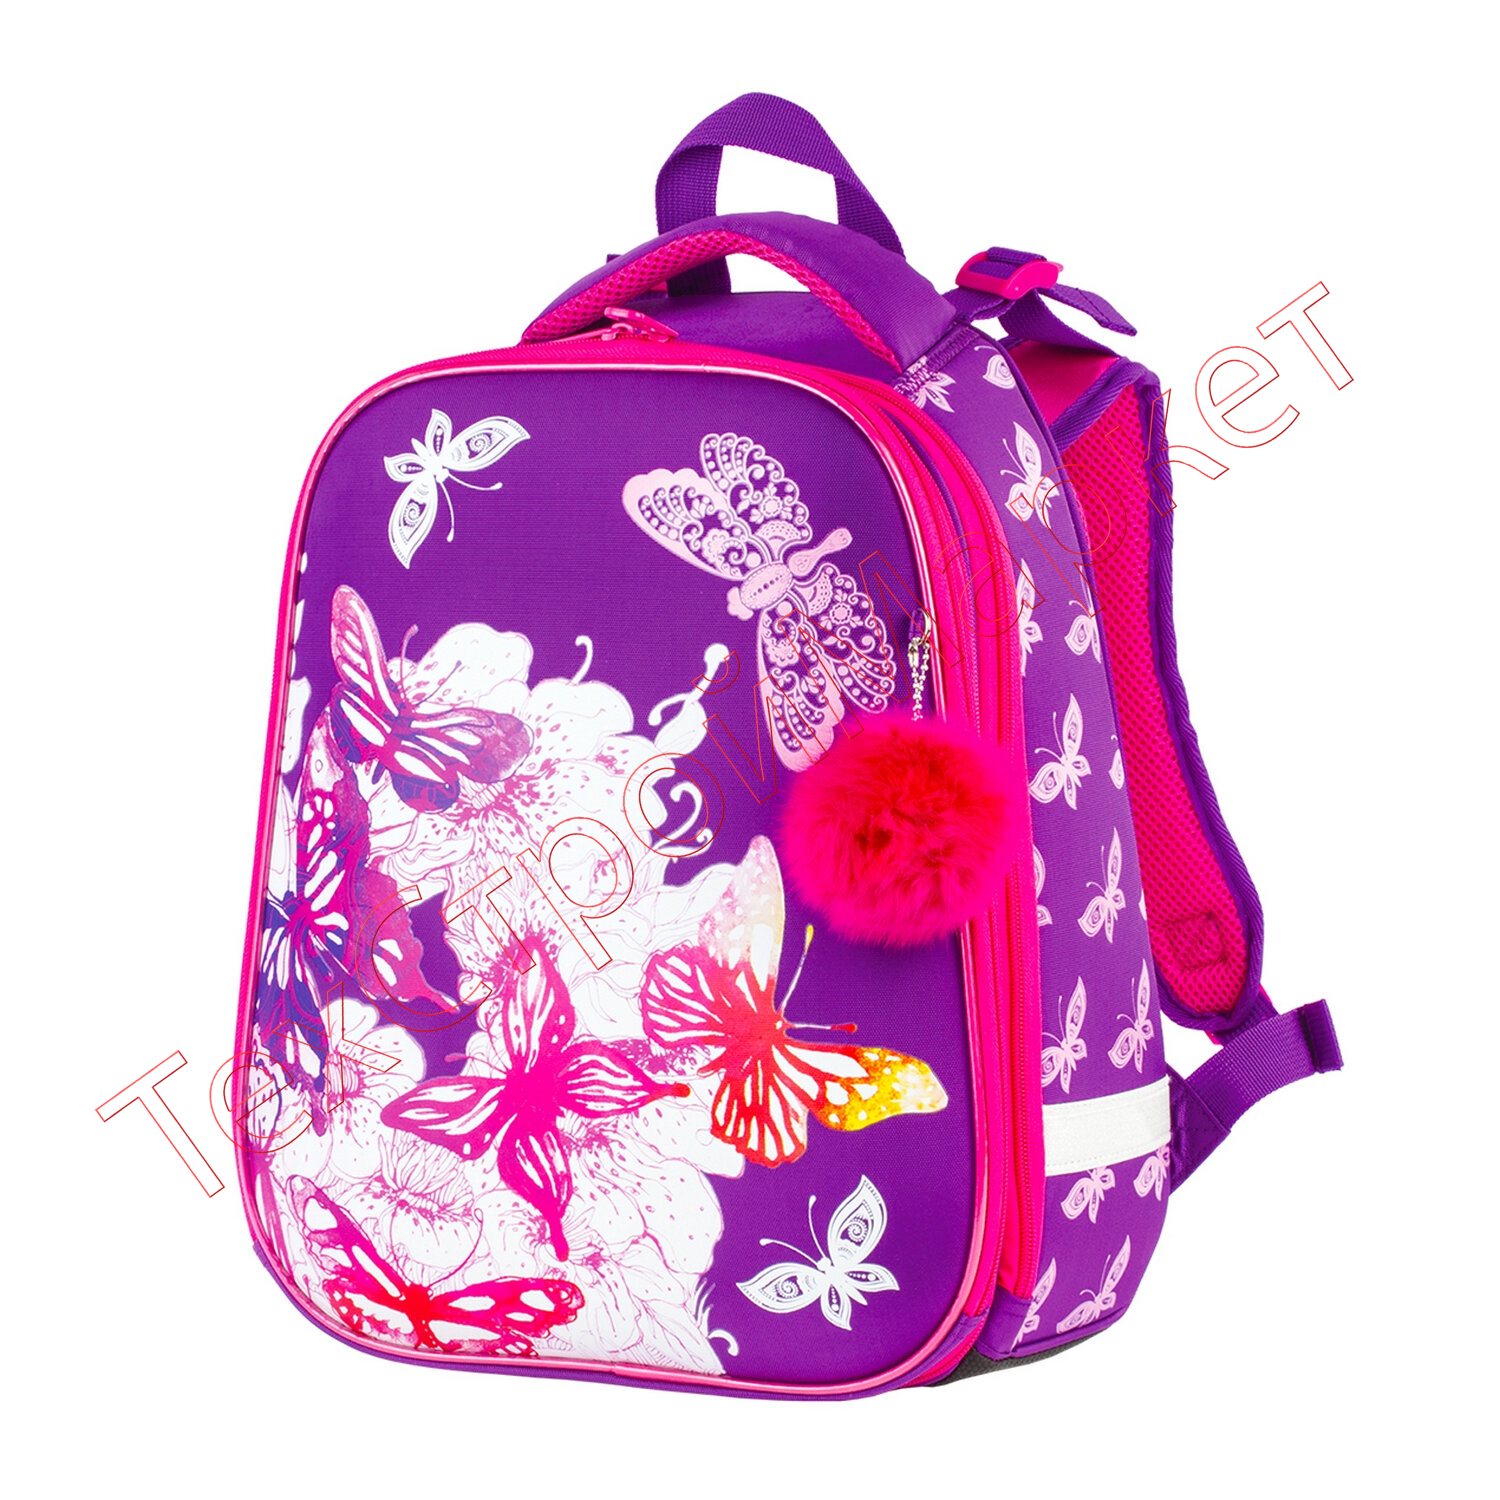 Куплю портфель для девочки. BRAUBERG рюкзак Premium бабочки. Рюкзаки БРАУБЕРГ для девочек. Рюкзак БРАУБЕРГ для девочки фиолетовый. BRAUBERG рюкзак розовый школьный.